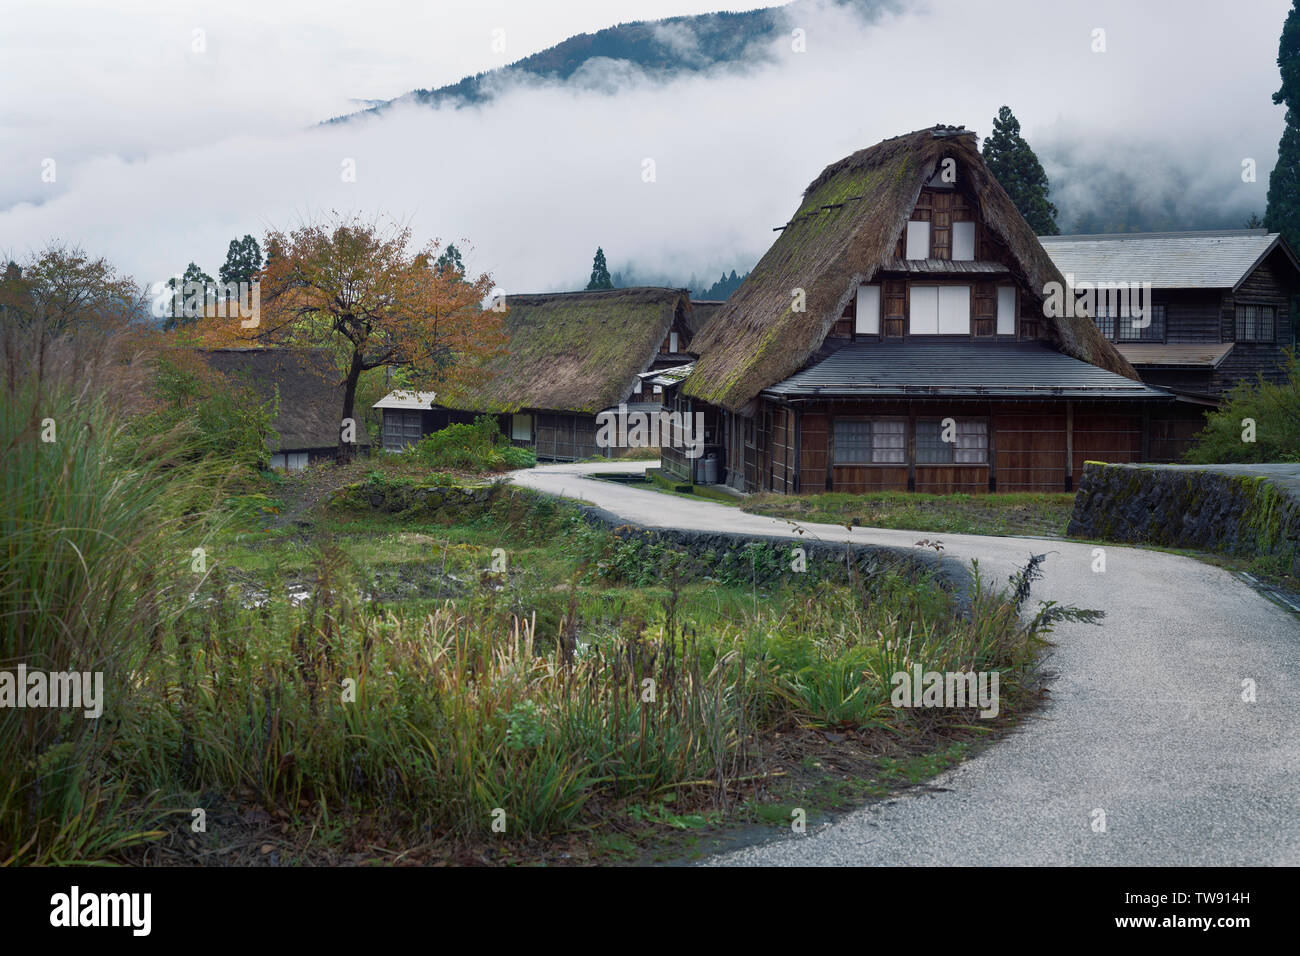 Licence et estampes sur MaximImages.com - Ainokura, village japonais avec des maisons rurales traditionnelles Gassho zukiri. Toyama, Japon. Banque D'Images